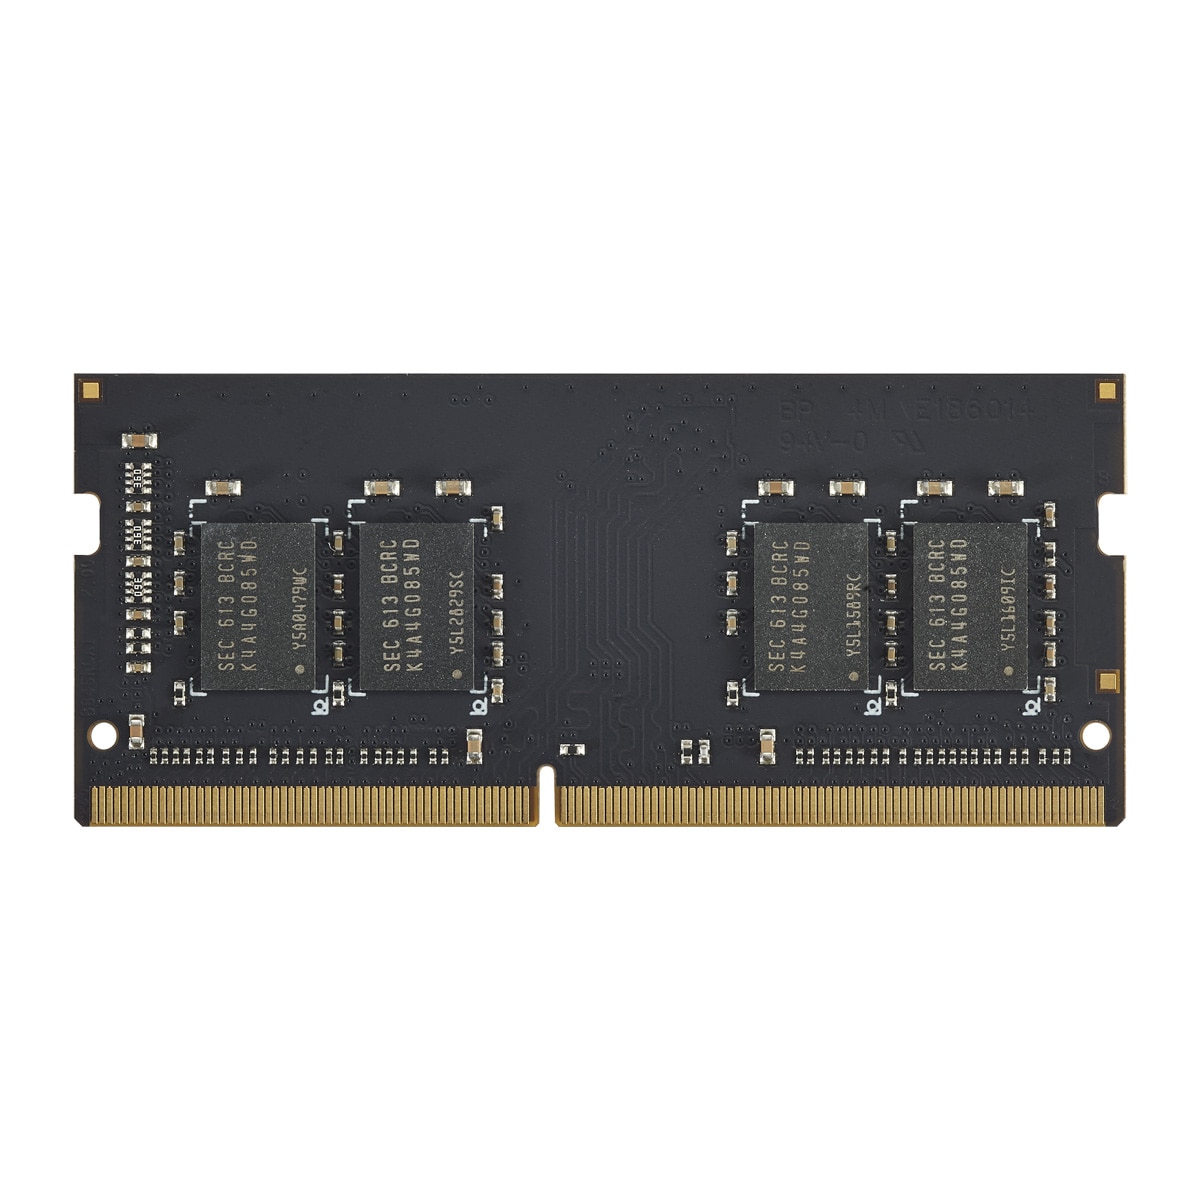 TERRAMASTER 4G DDR4 RAM SO-DIMM, F2-423, F4-423, T6-423, T9-423, T12-423, U4-423, U8-423, U12-423